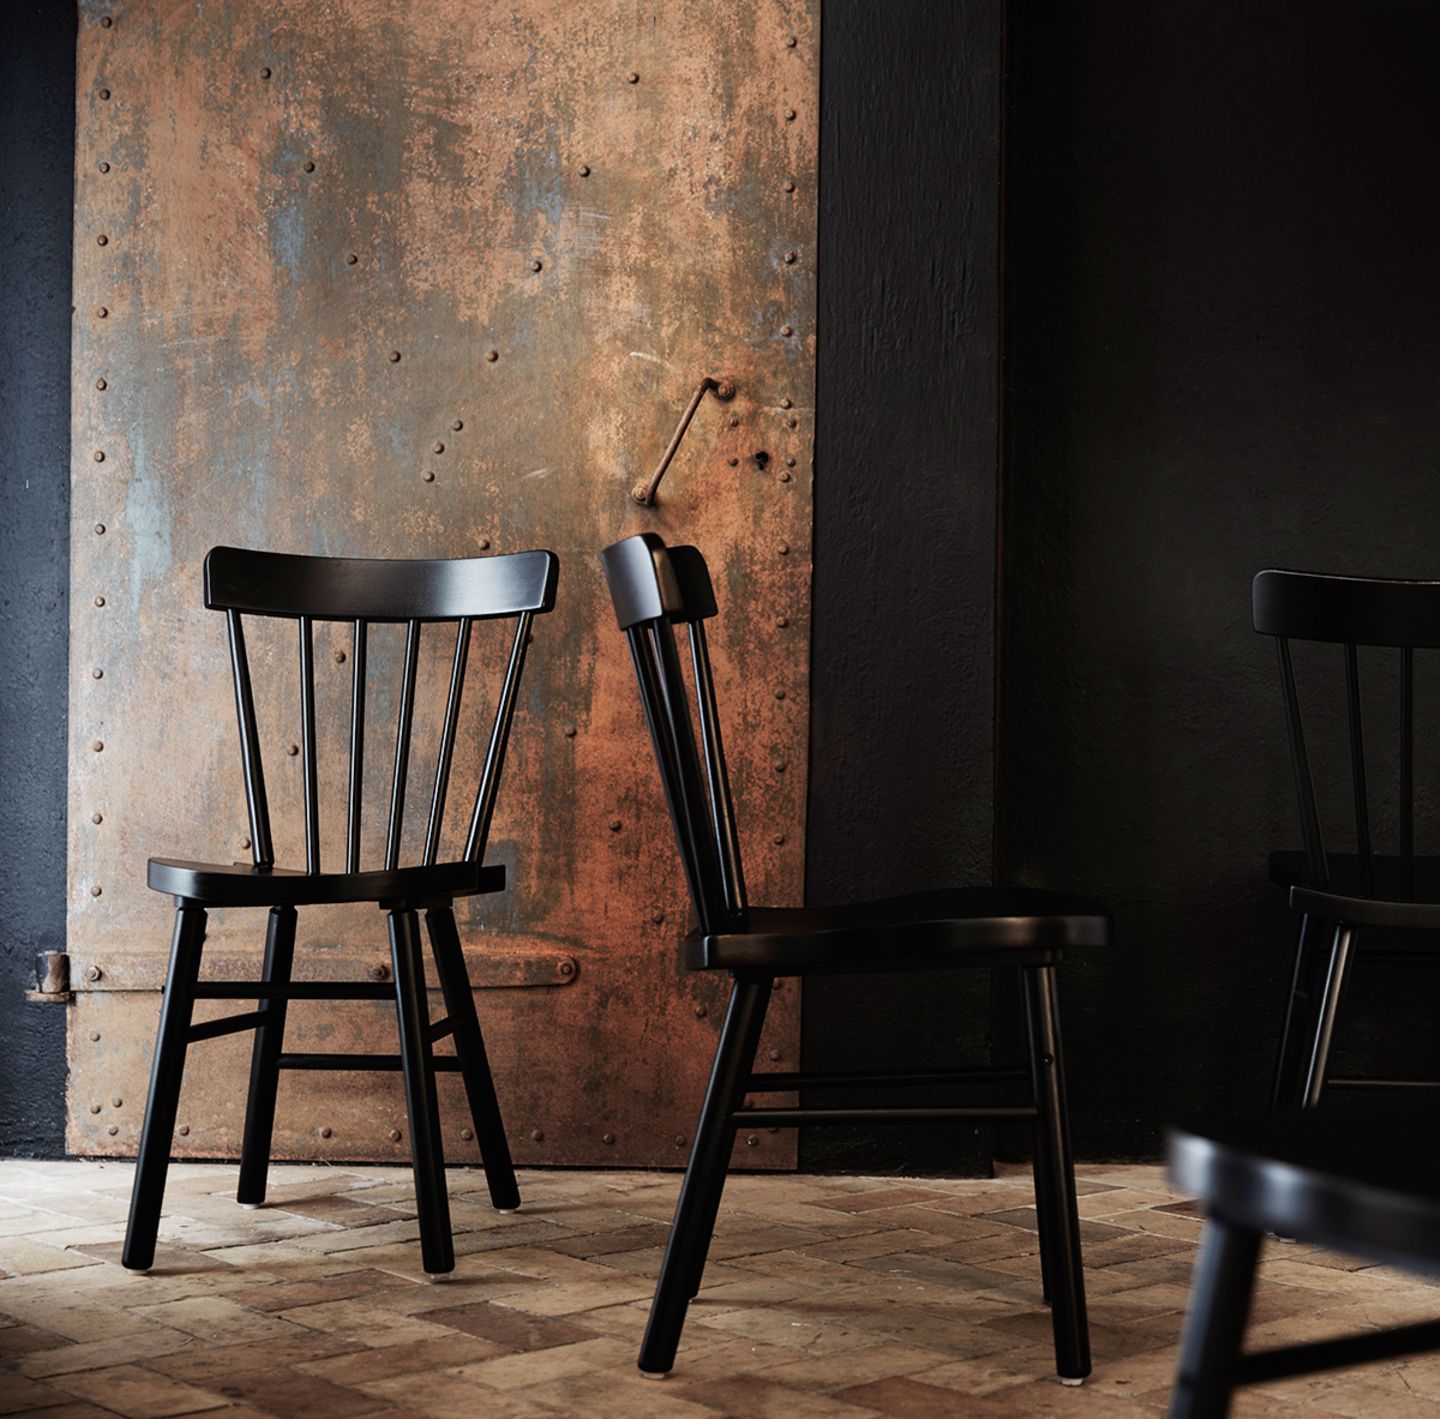 Landhausmöbel - Stuhl "Norraryd" von Ikea